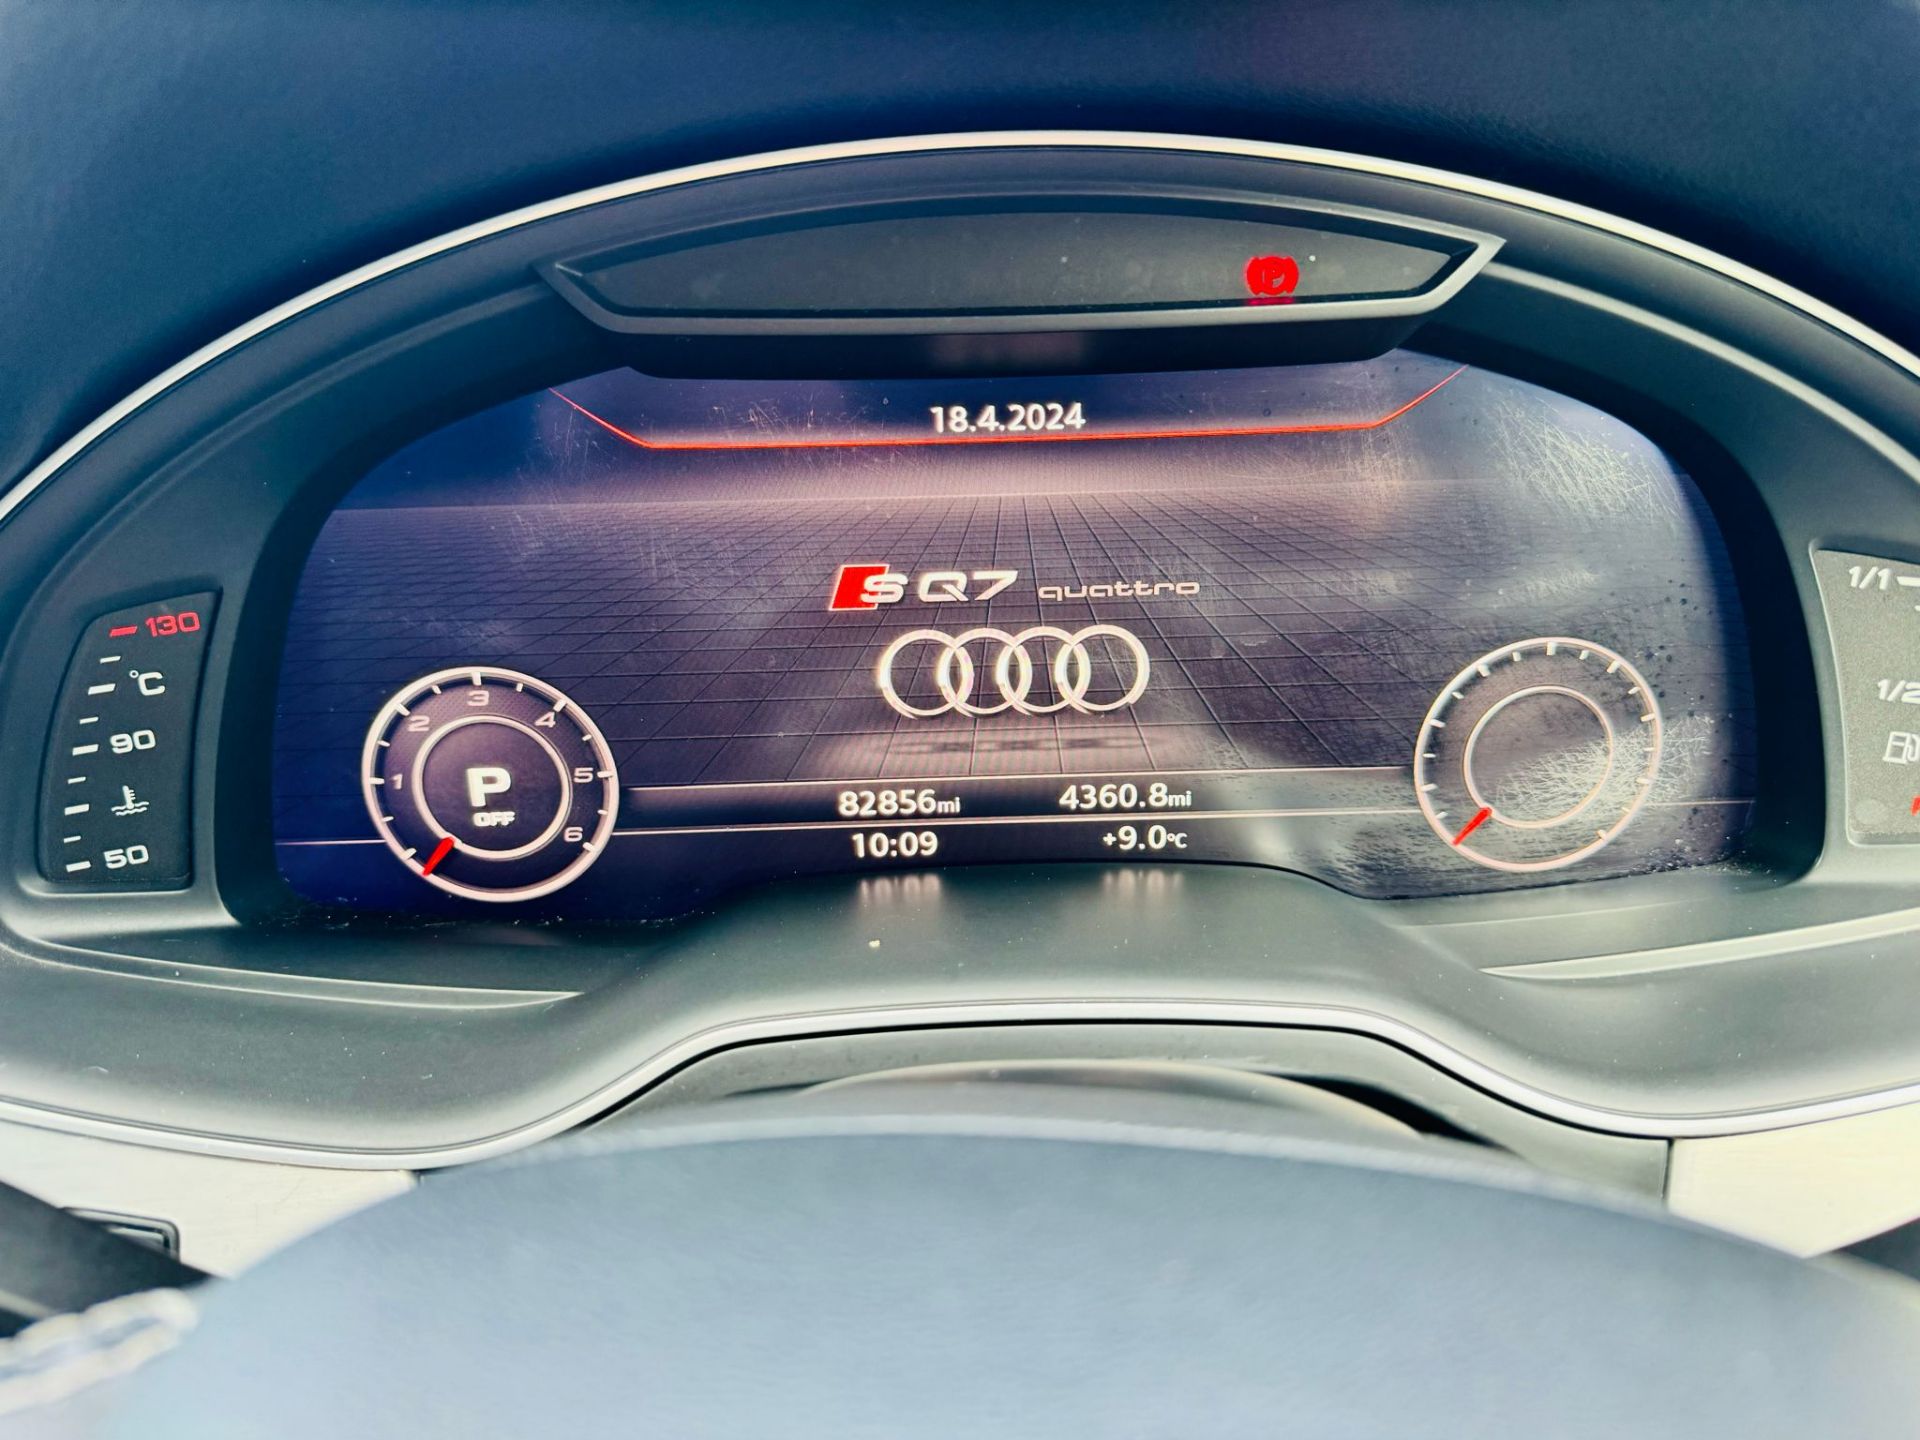 Audi SQ7 4.0TDI V8 Quattro 430BHP "SQ7 EDITION" Auto (7 Seats) 2018 18Reg -Sat Nav -Reversing camera - Image 30 of 38